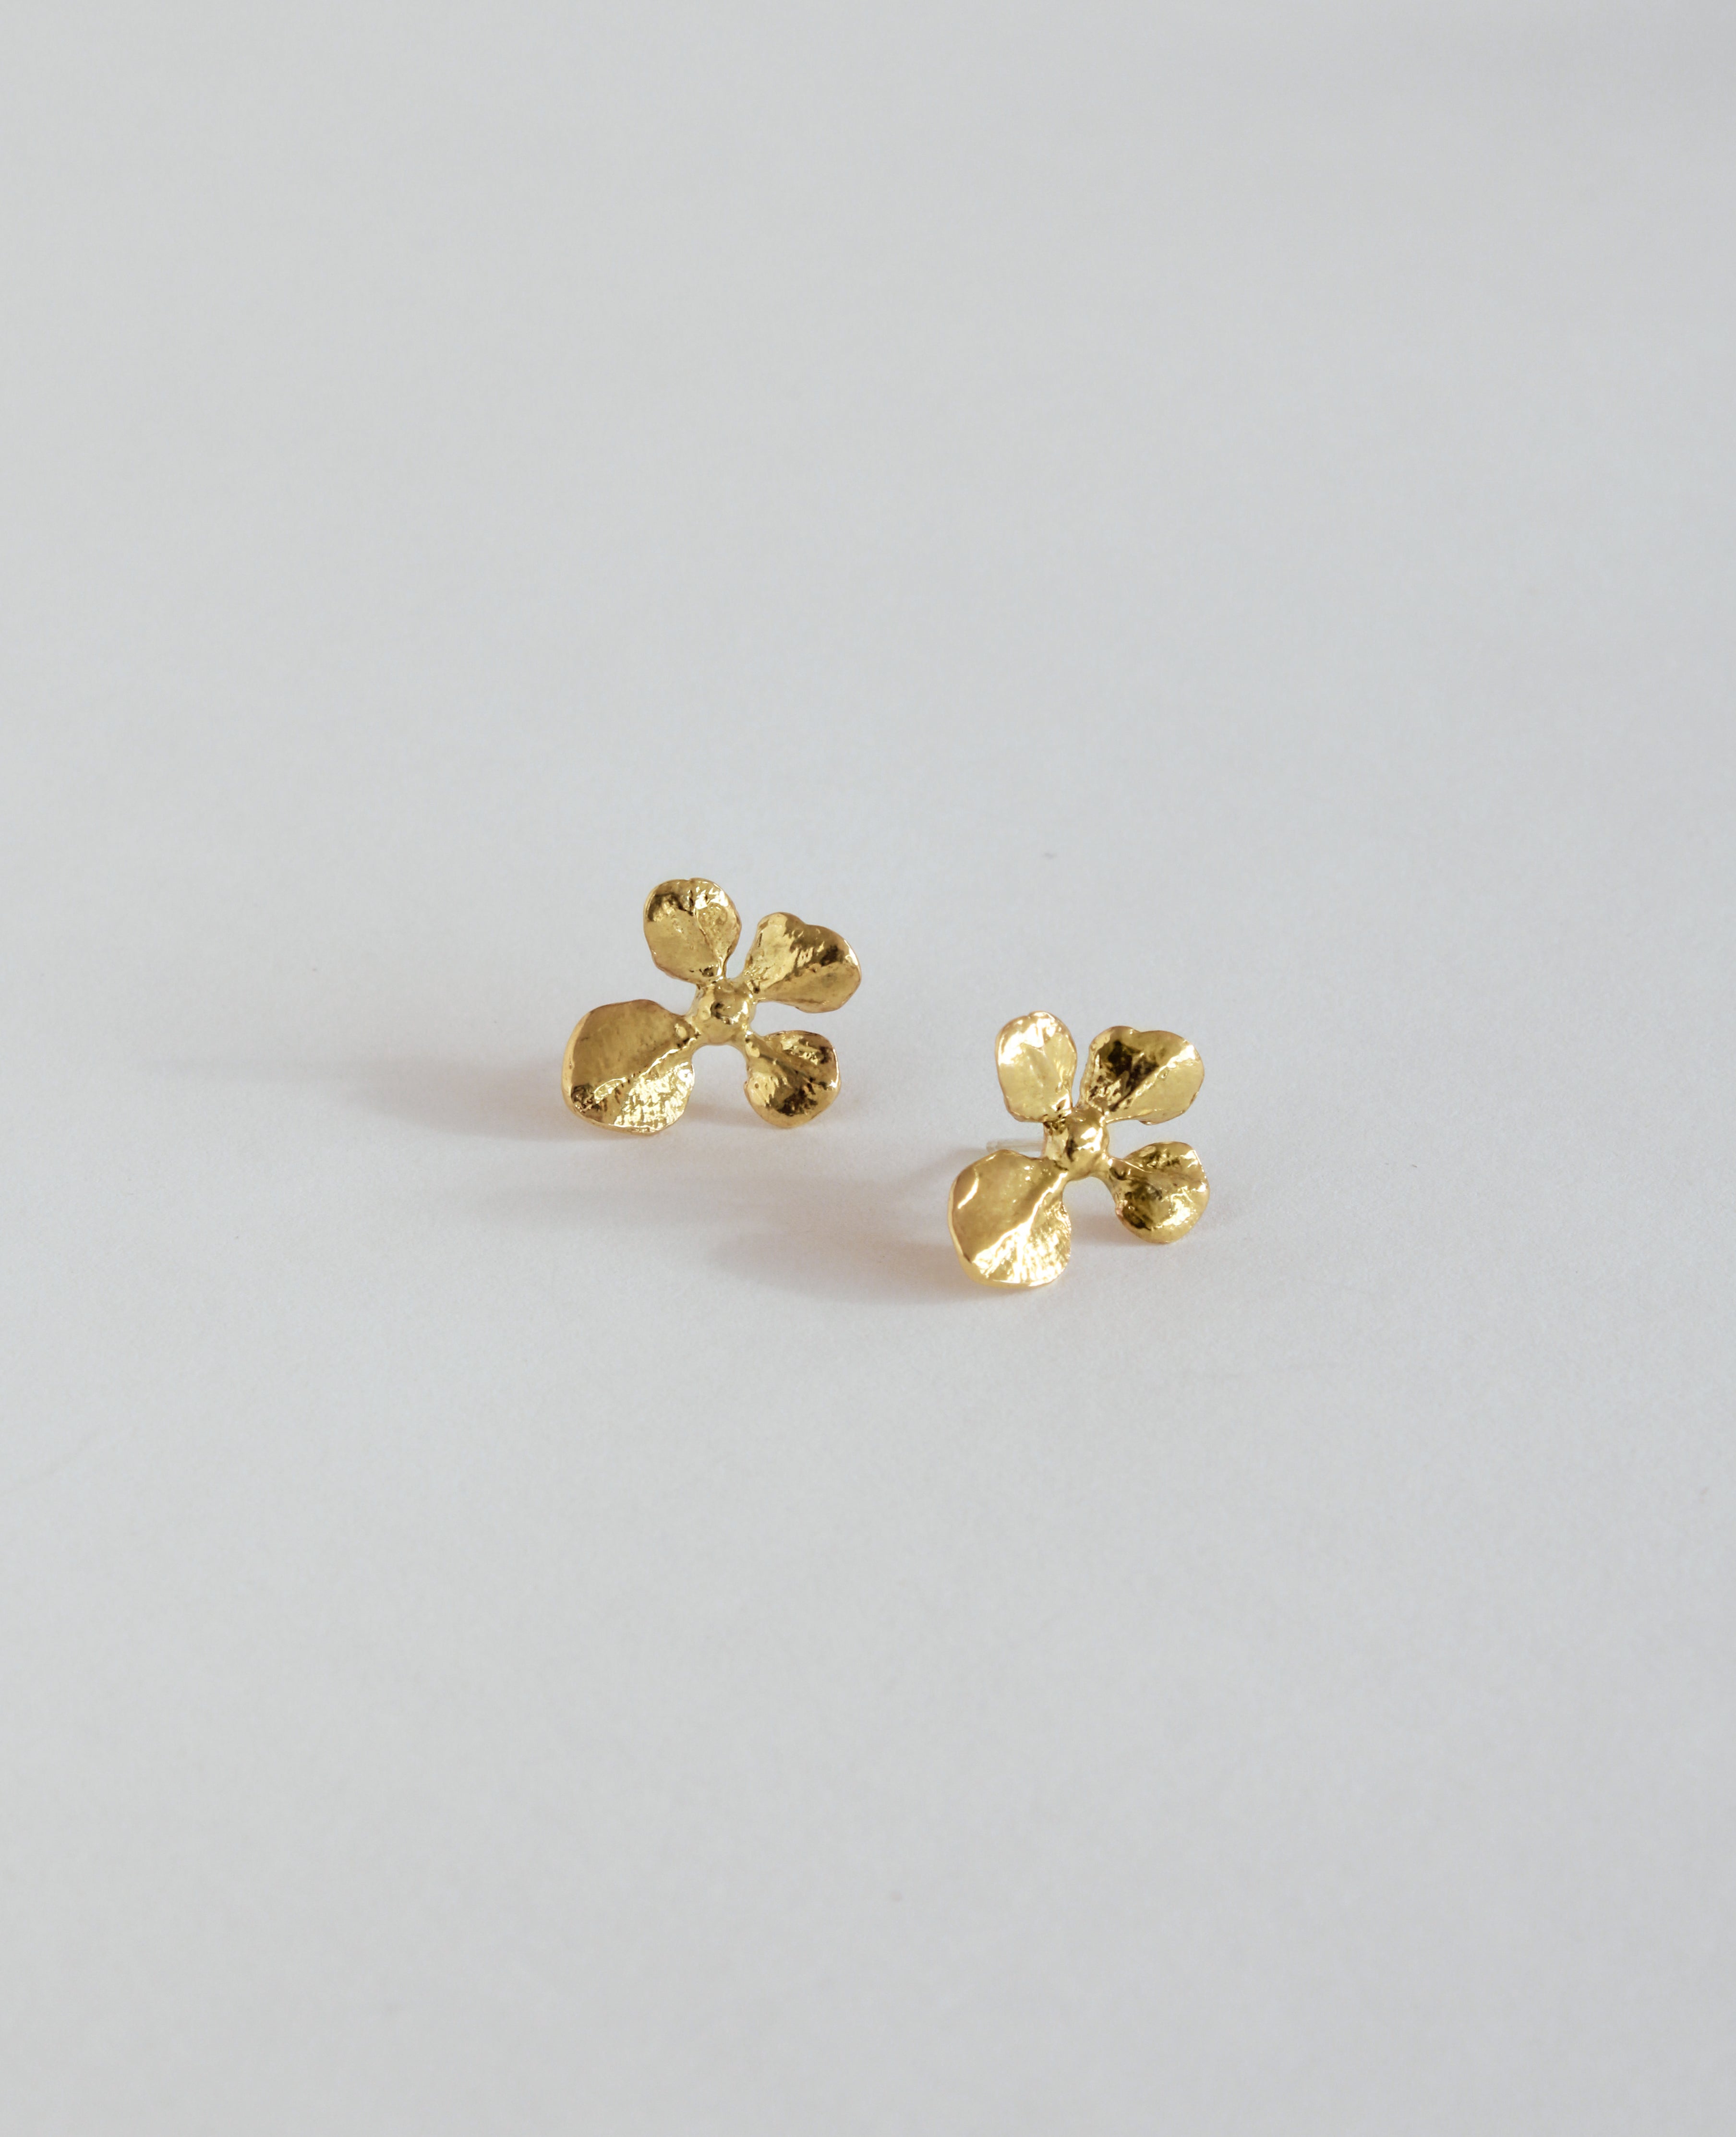 BUDS VIRGO // doré - ORA-C jewelry - bijoux faits à la main par Caroline Pham, designer indépendante basée à Montréal